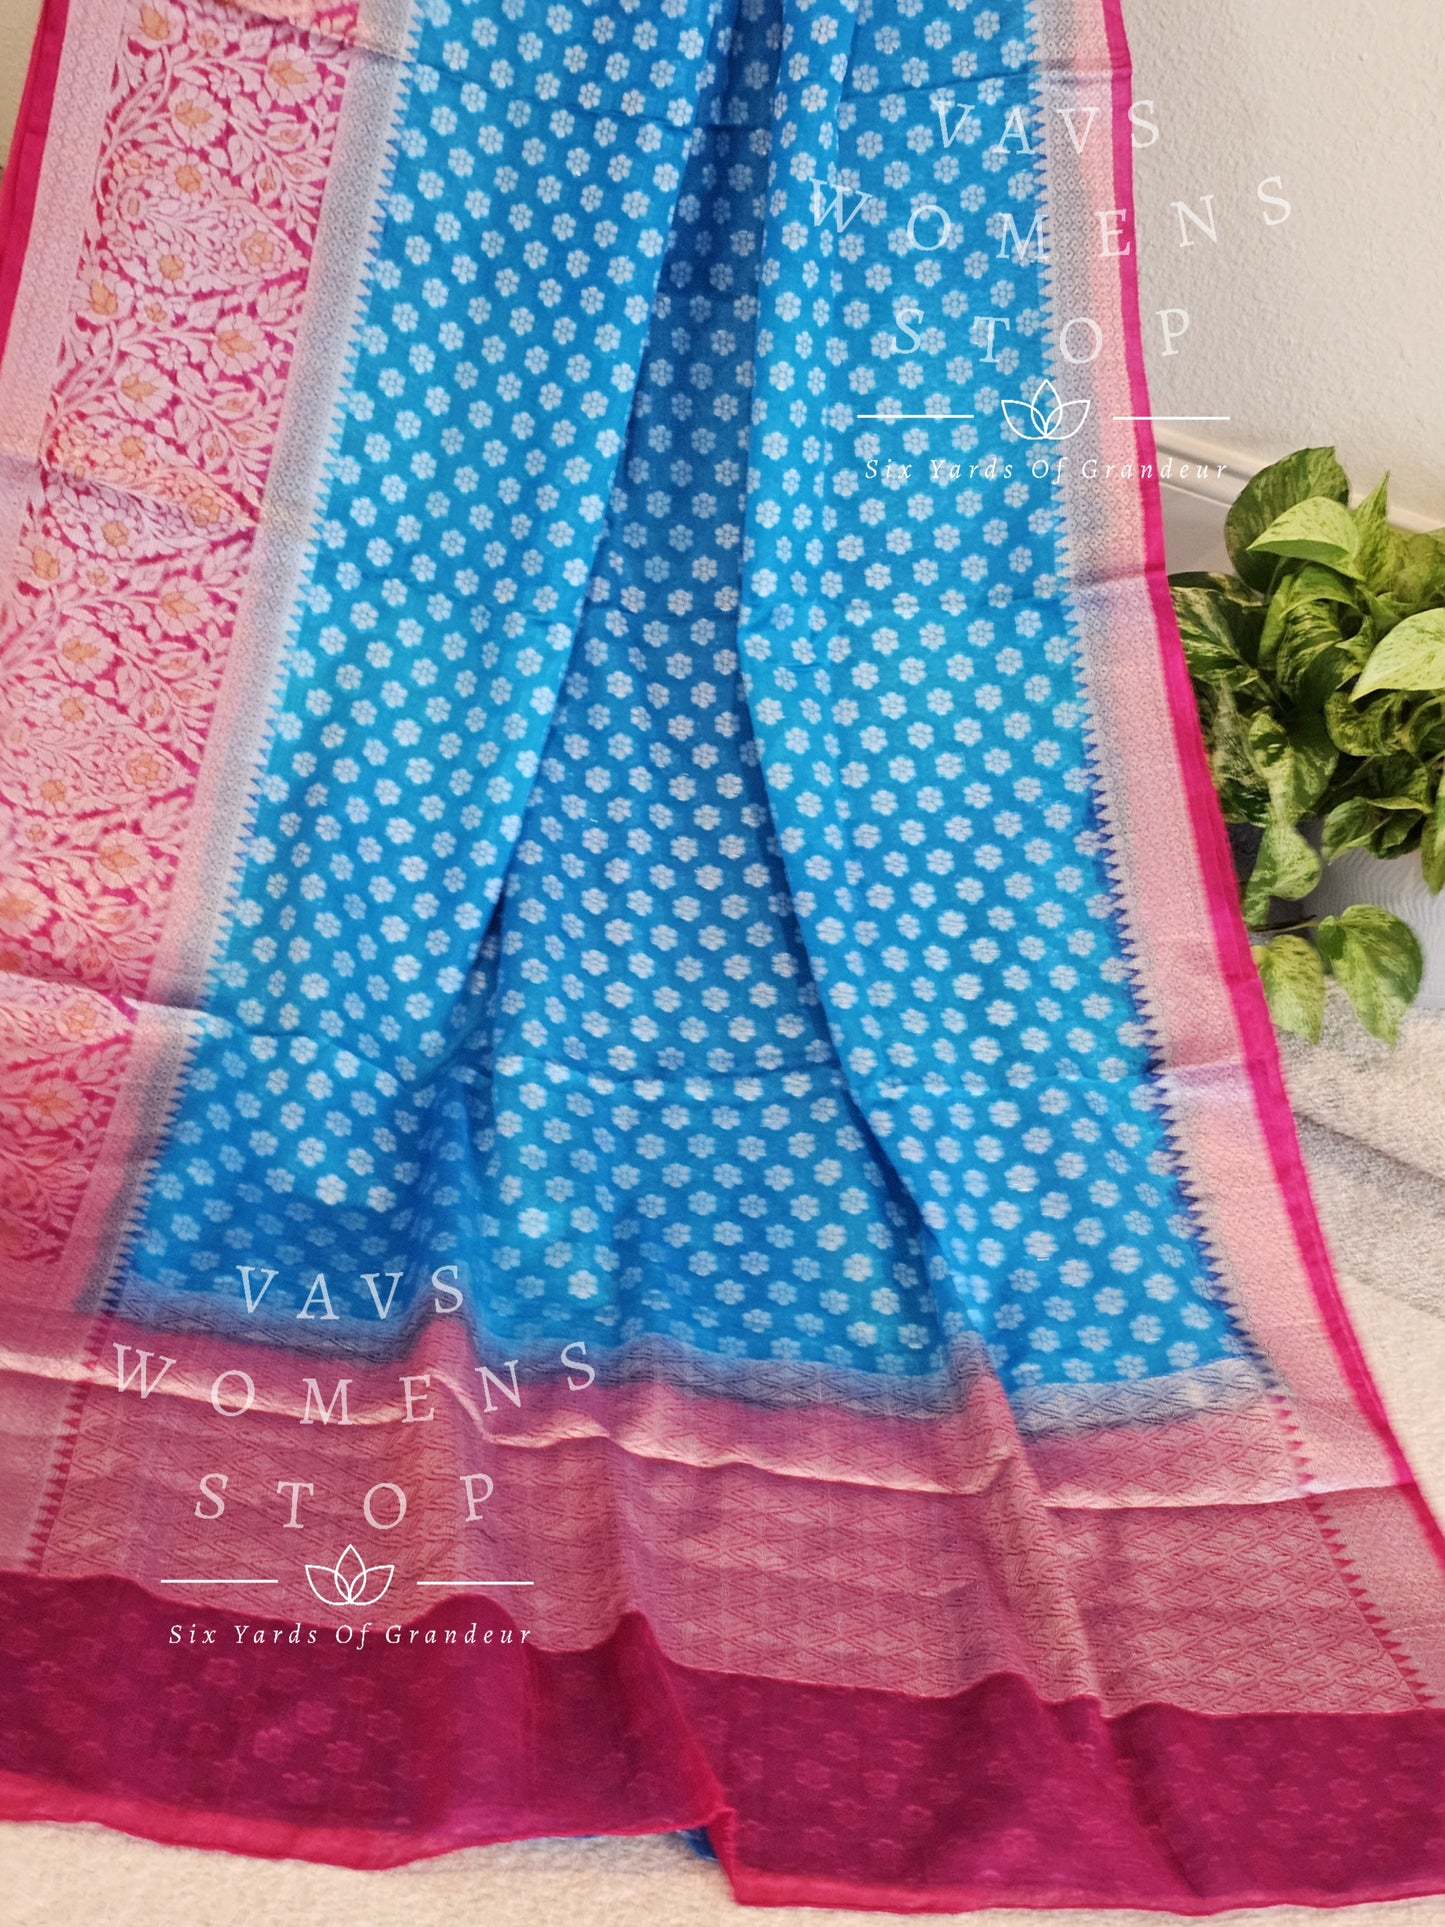 Fancy Benarasi Warm Silk Saree - Blouse